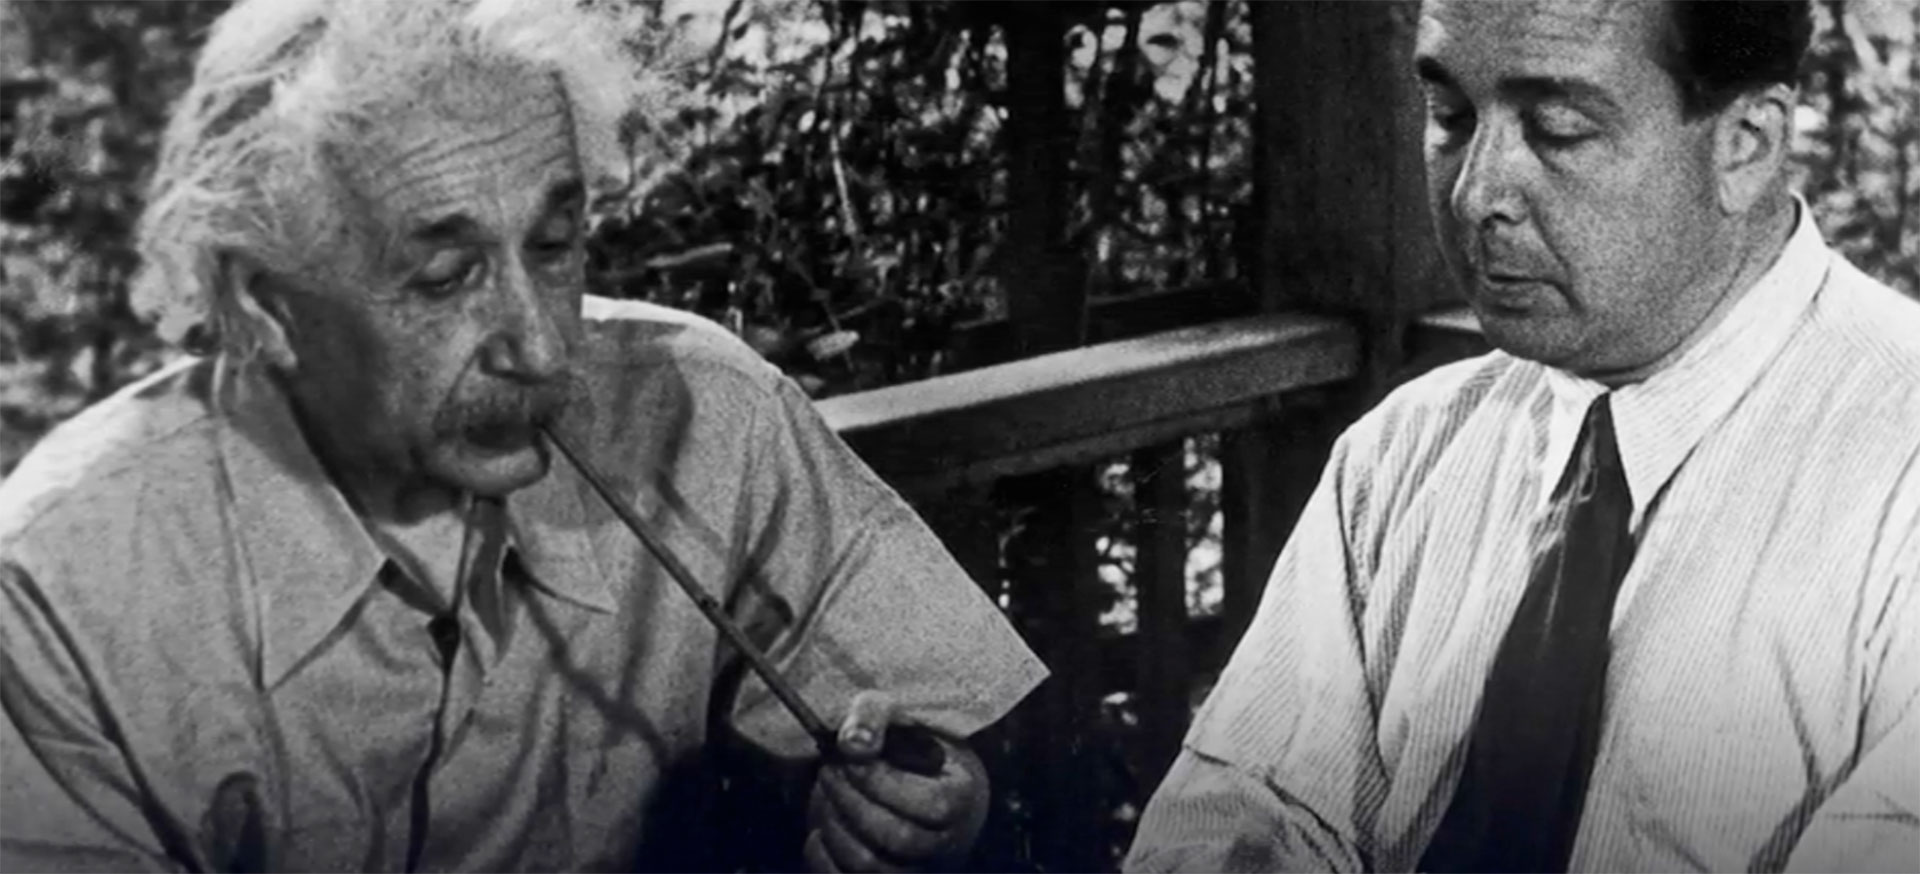 Albert Einstein (izquierda) y Leó Szilárd (derecha) juntos en 1946. La intervención de ambos fue decisiva para que Roosevelt firmara el documento para fabricar la bomba atómica. Slizard lo buscó cuando el físico estaba de vacaciones y fue quien le pidió que redactara la carta que convenció a Roosevelt